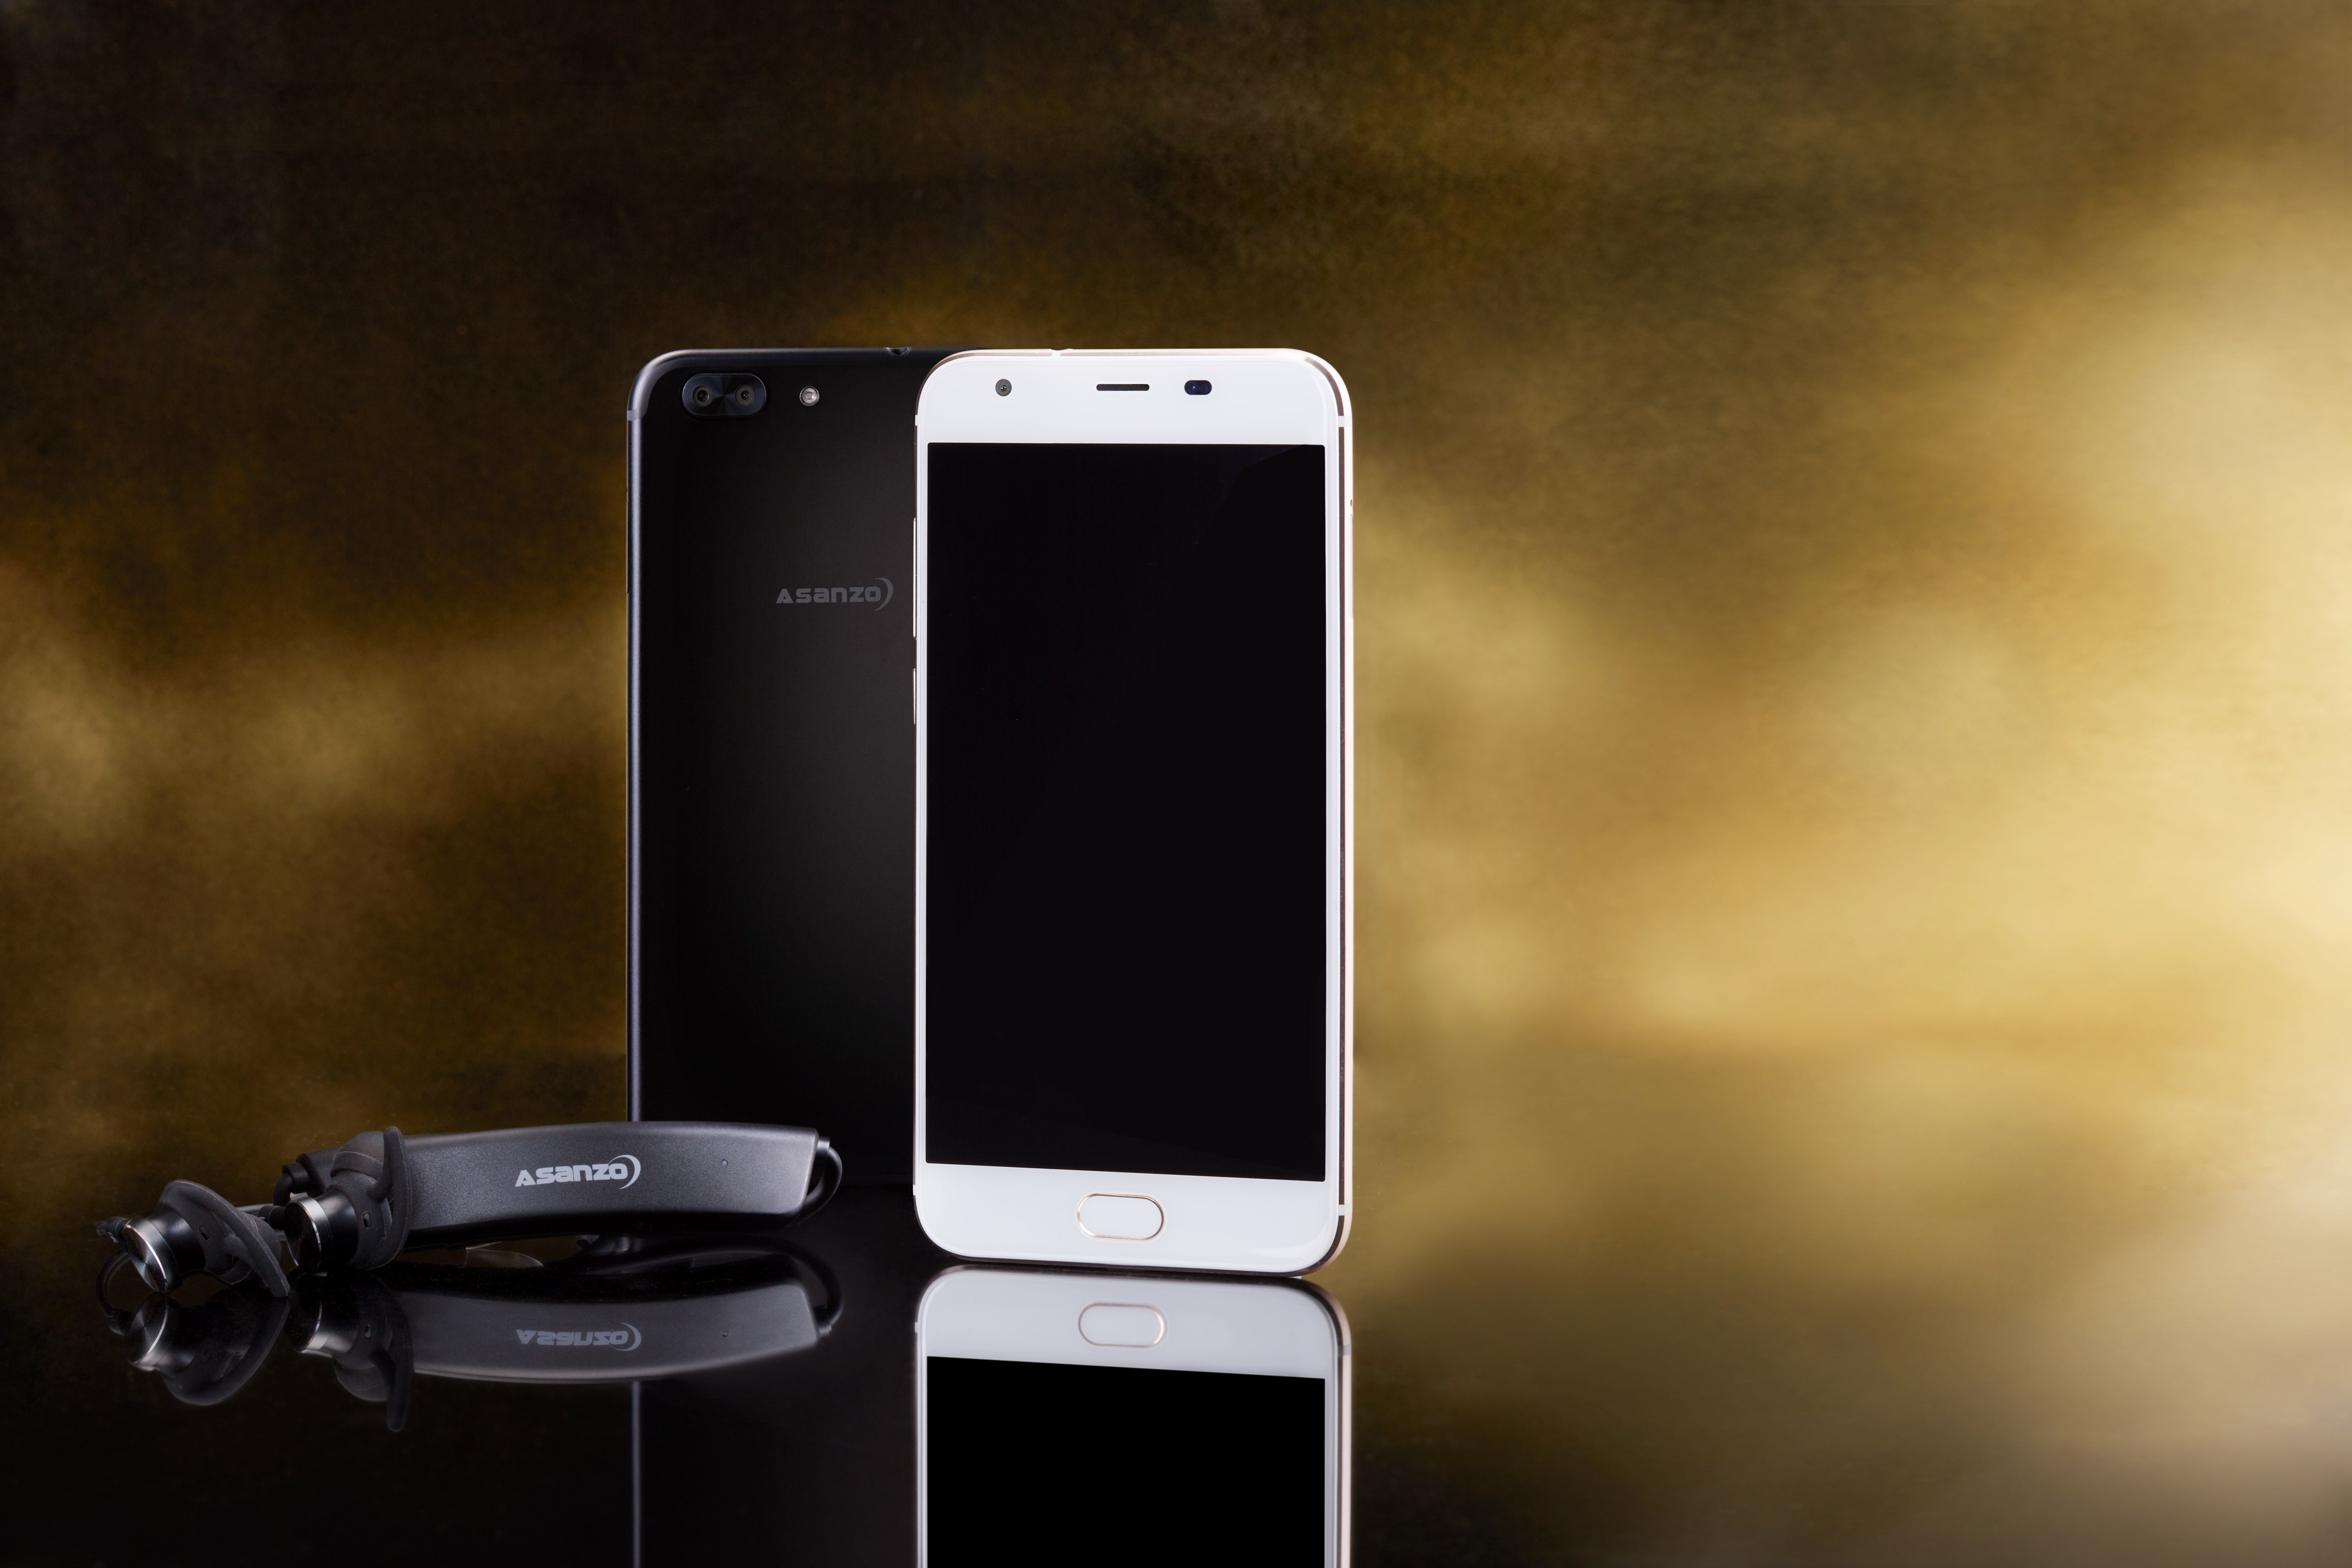 Asanzo chính thức ra mắt bộ đôi smartphone thương hiệu Việt Z5 và S5